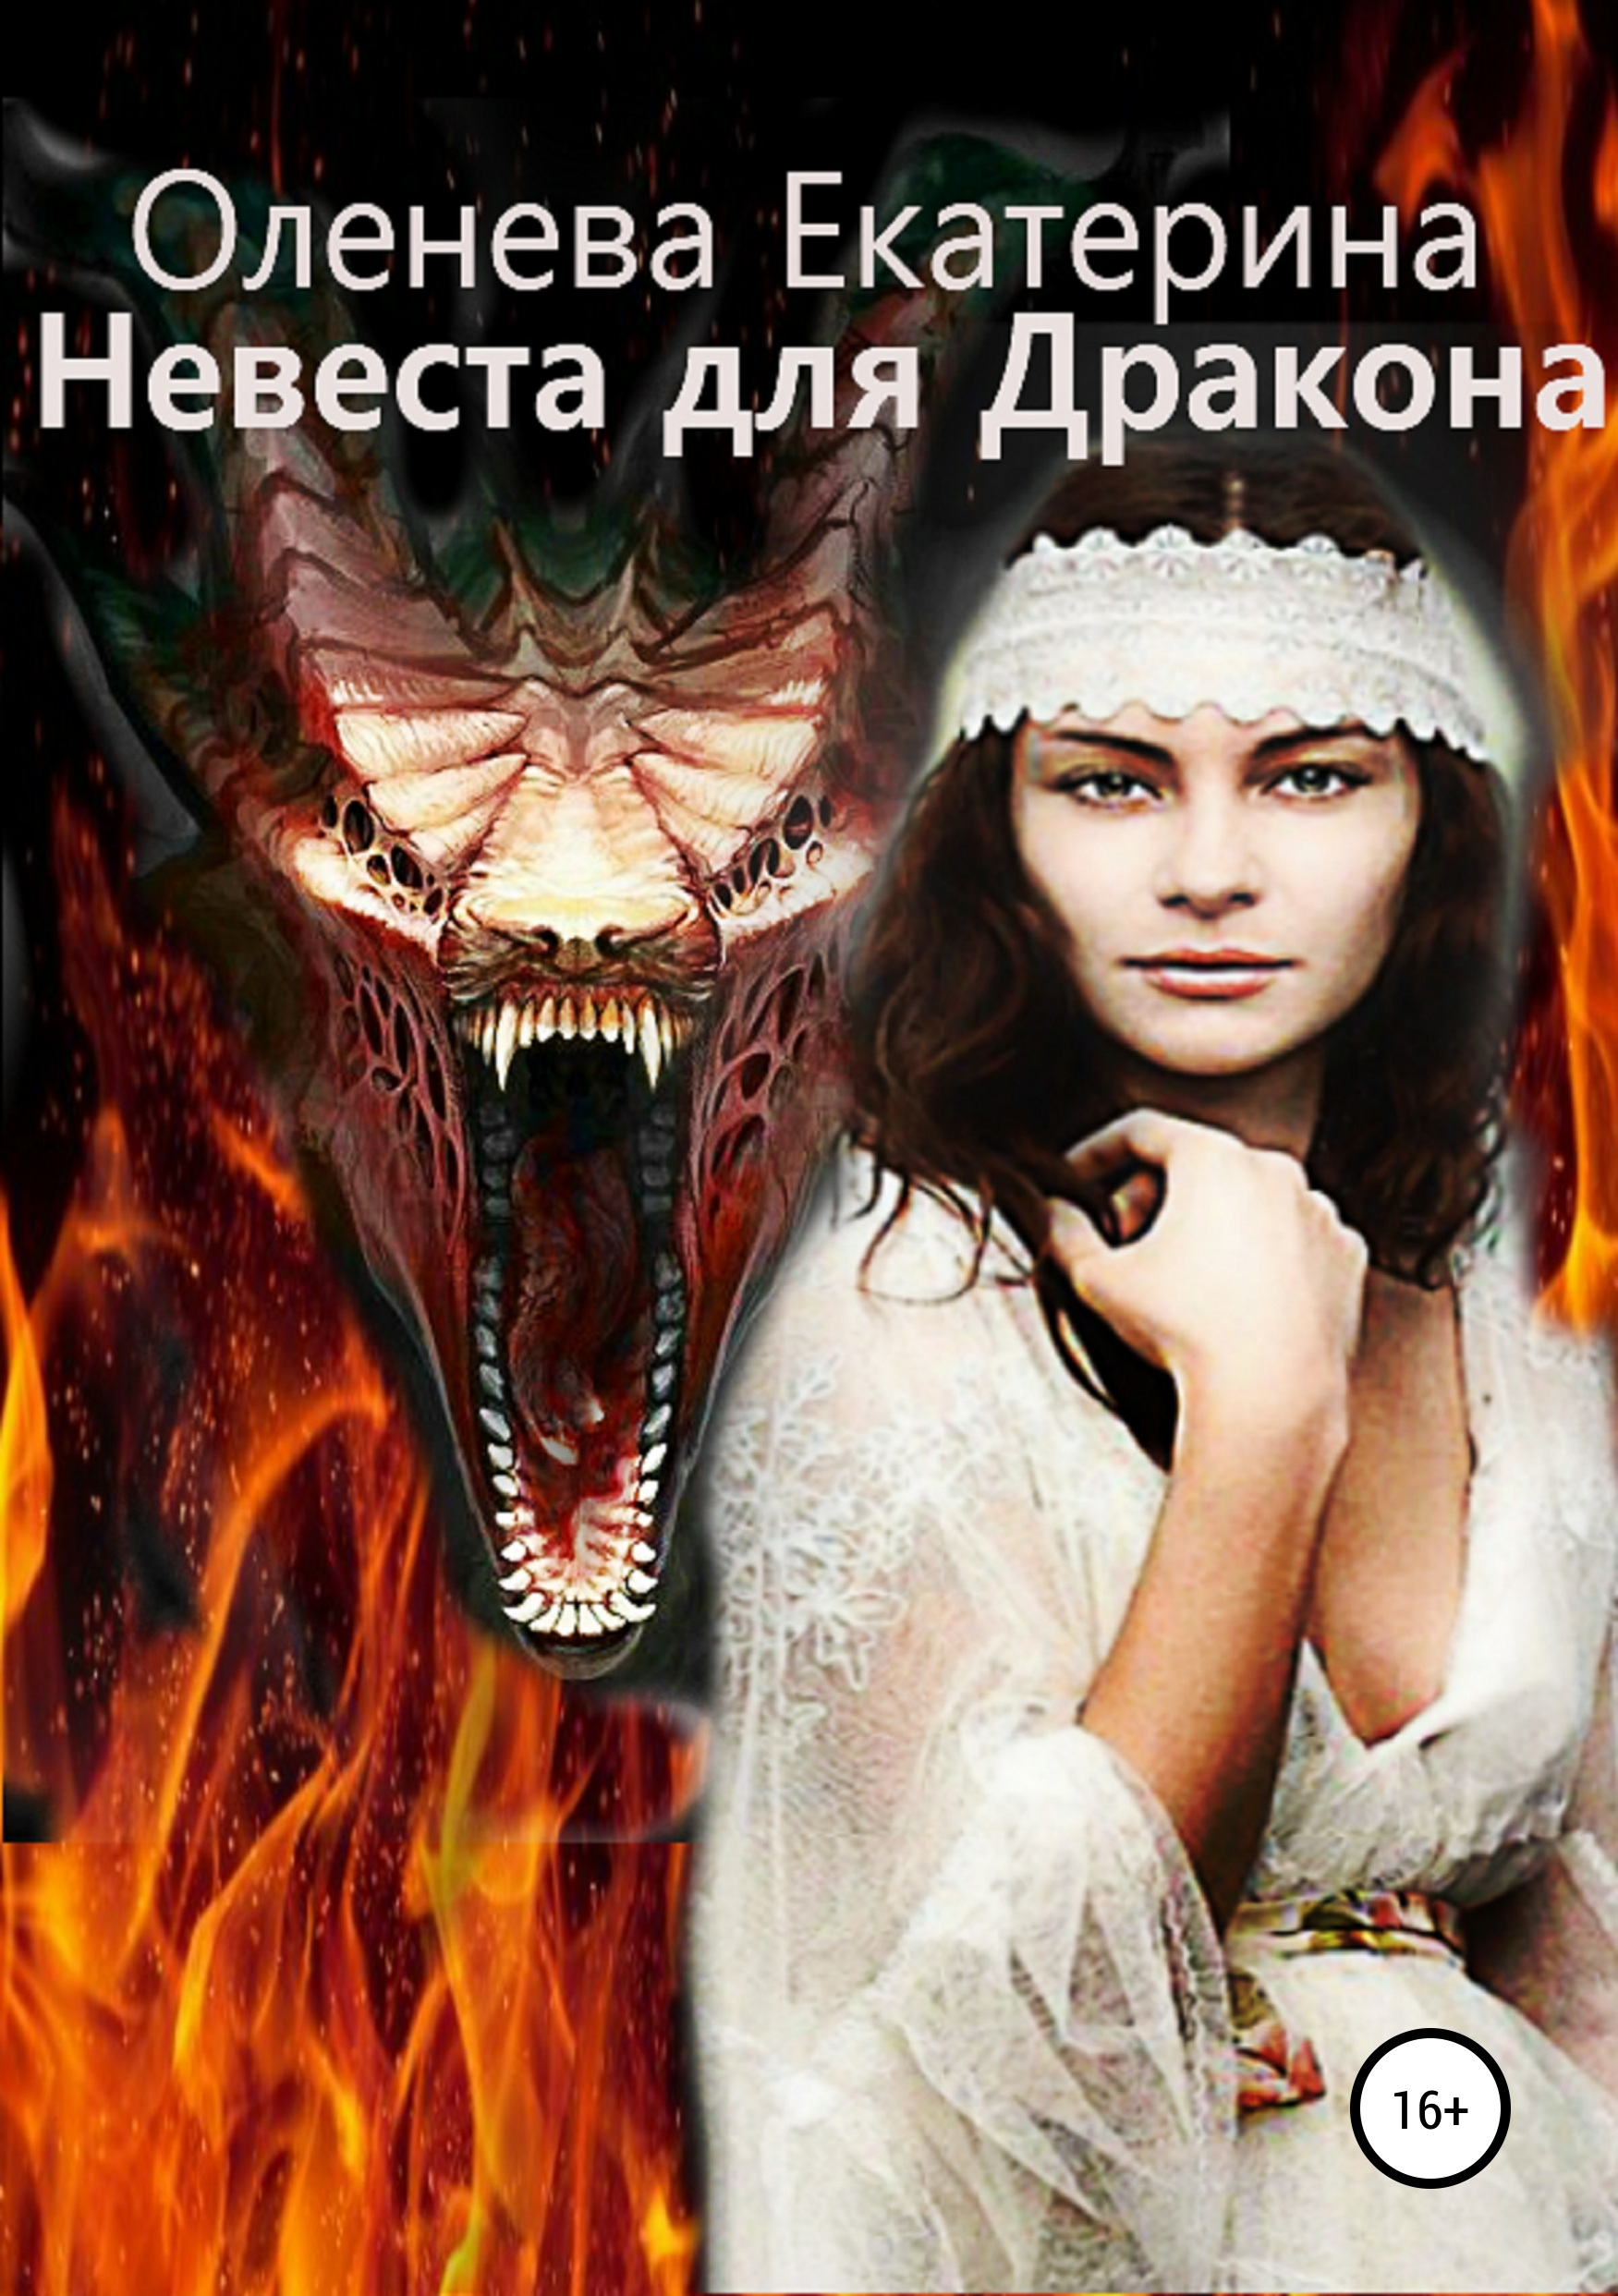 Скачать Невеста для Дракона - Екатерина Оленева